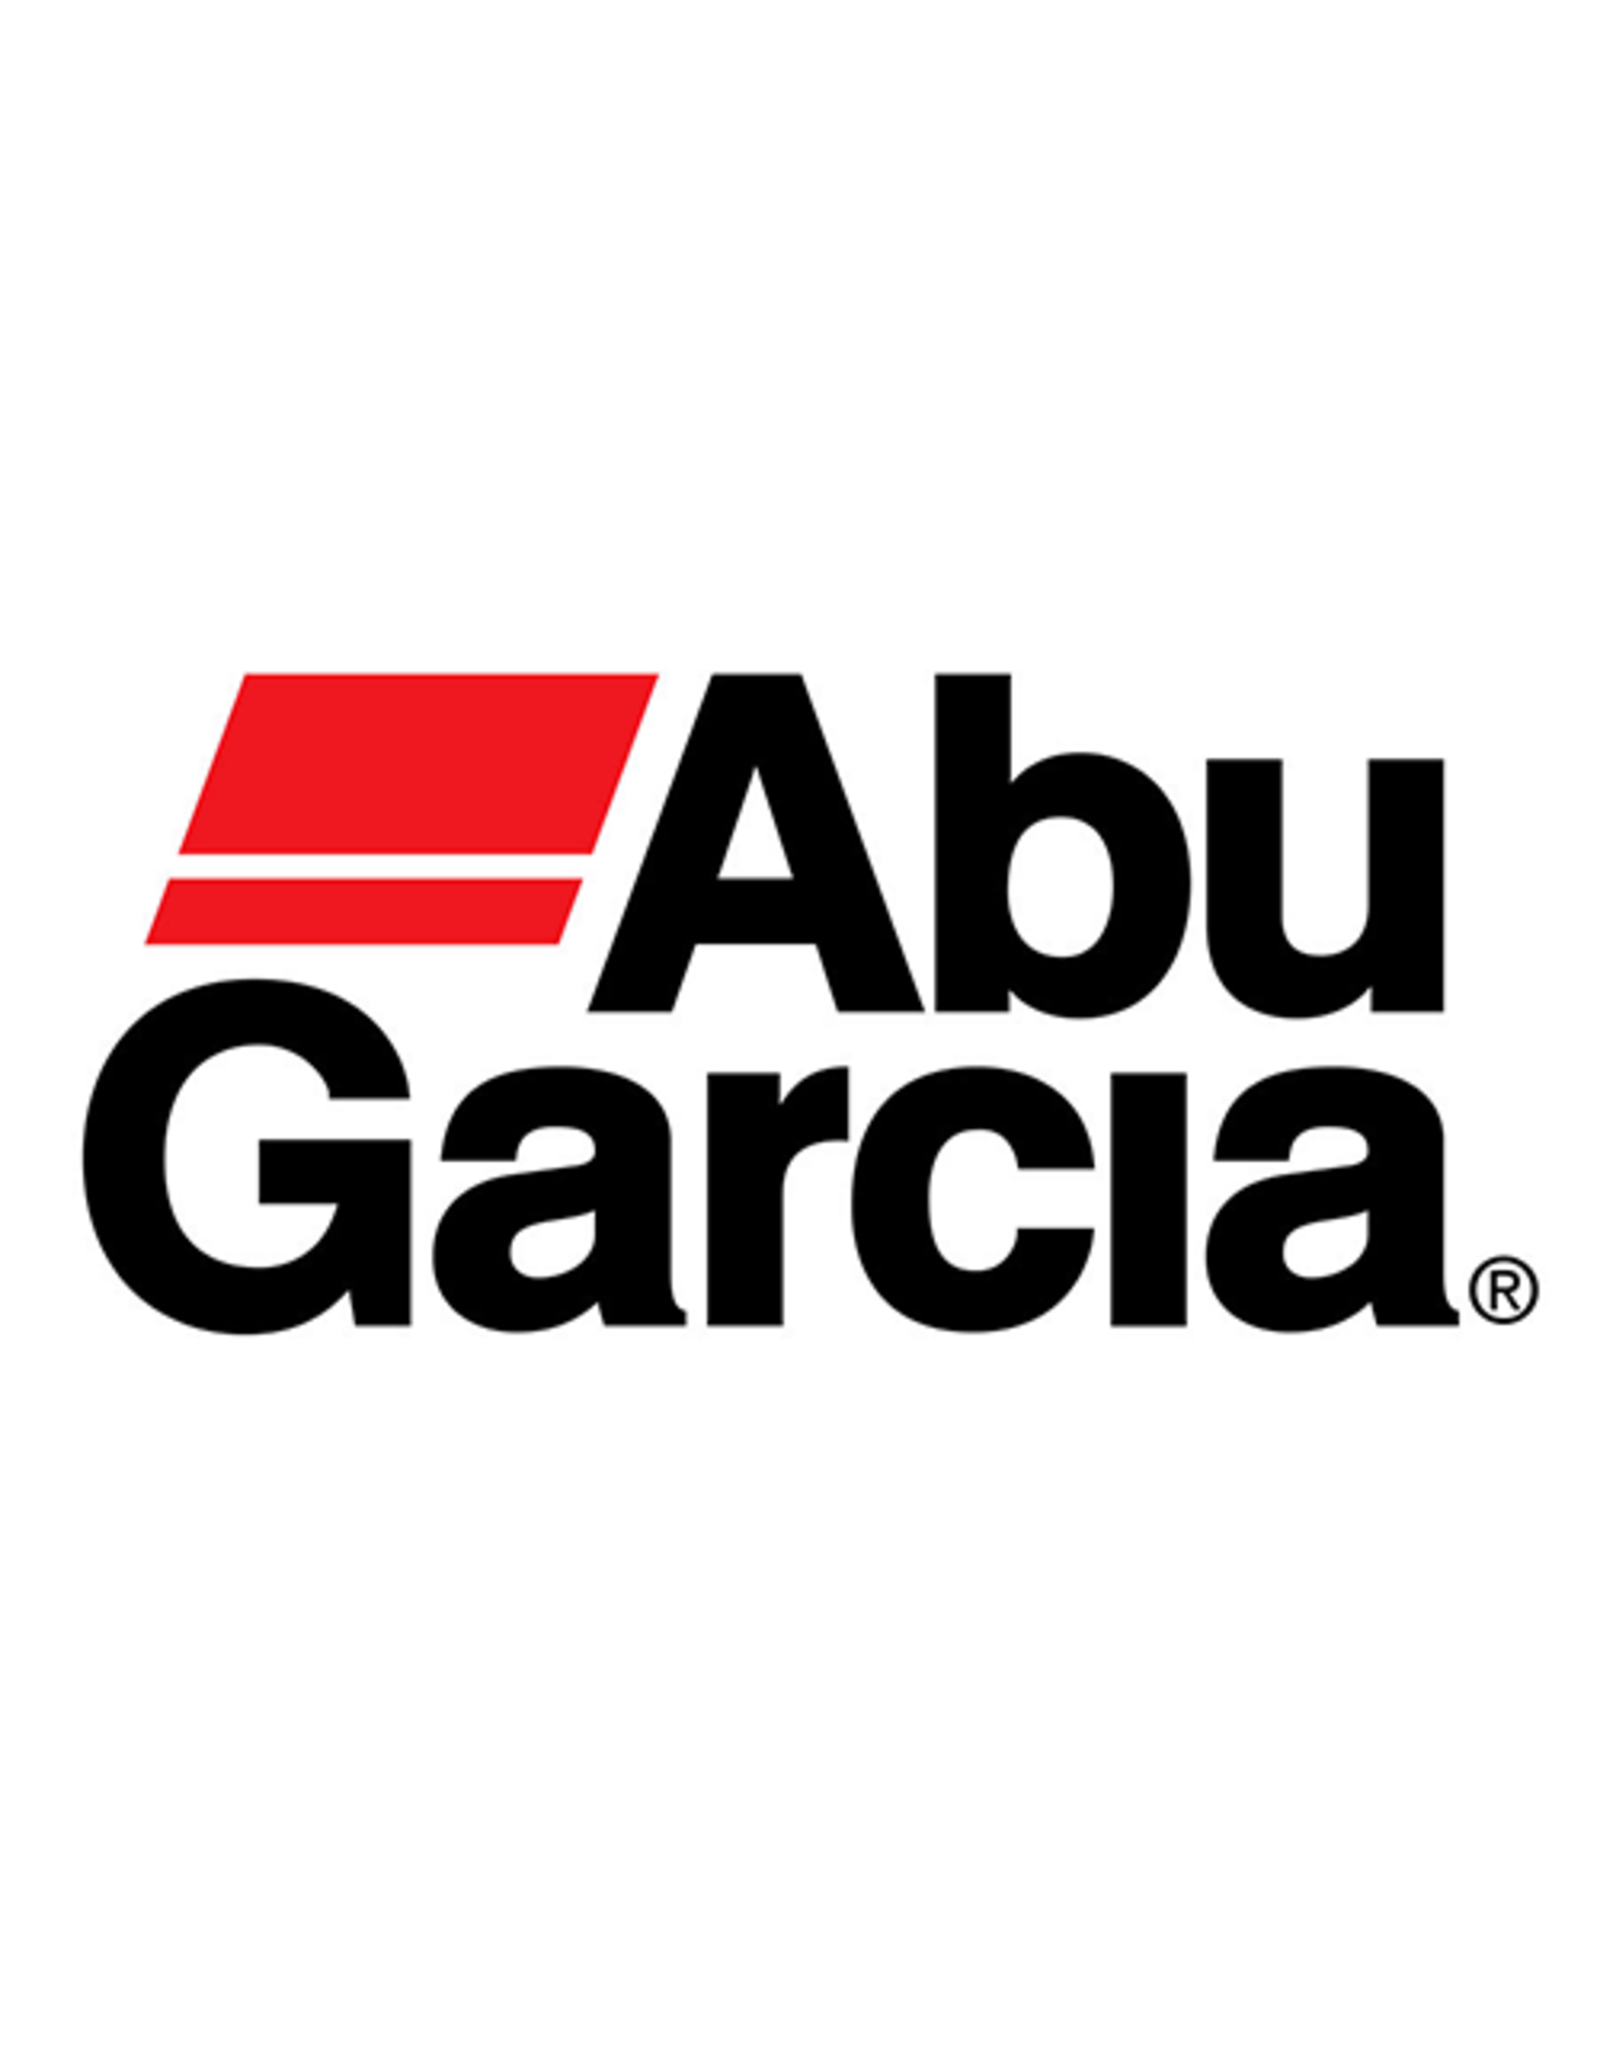 Abu Garcia 304  SCREW /SUB 13369